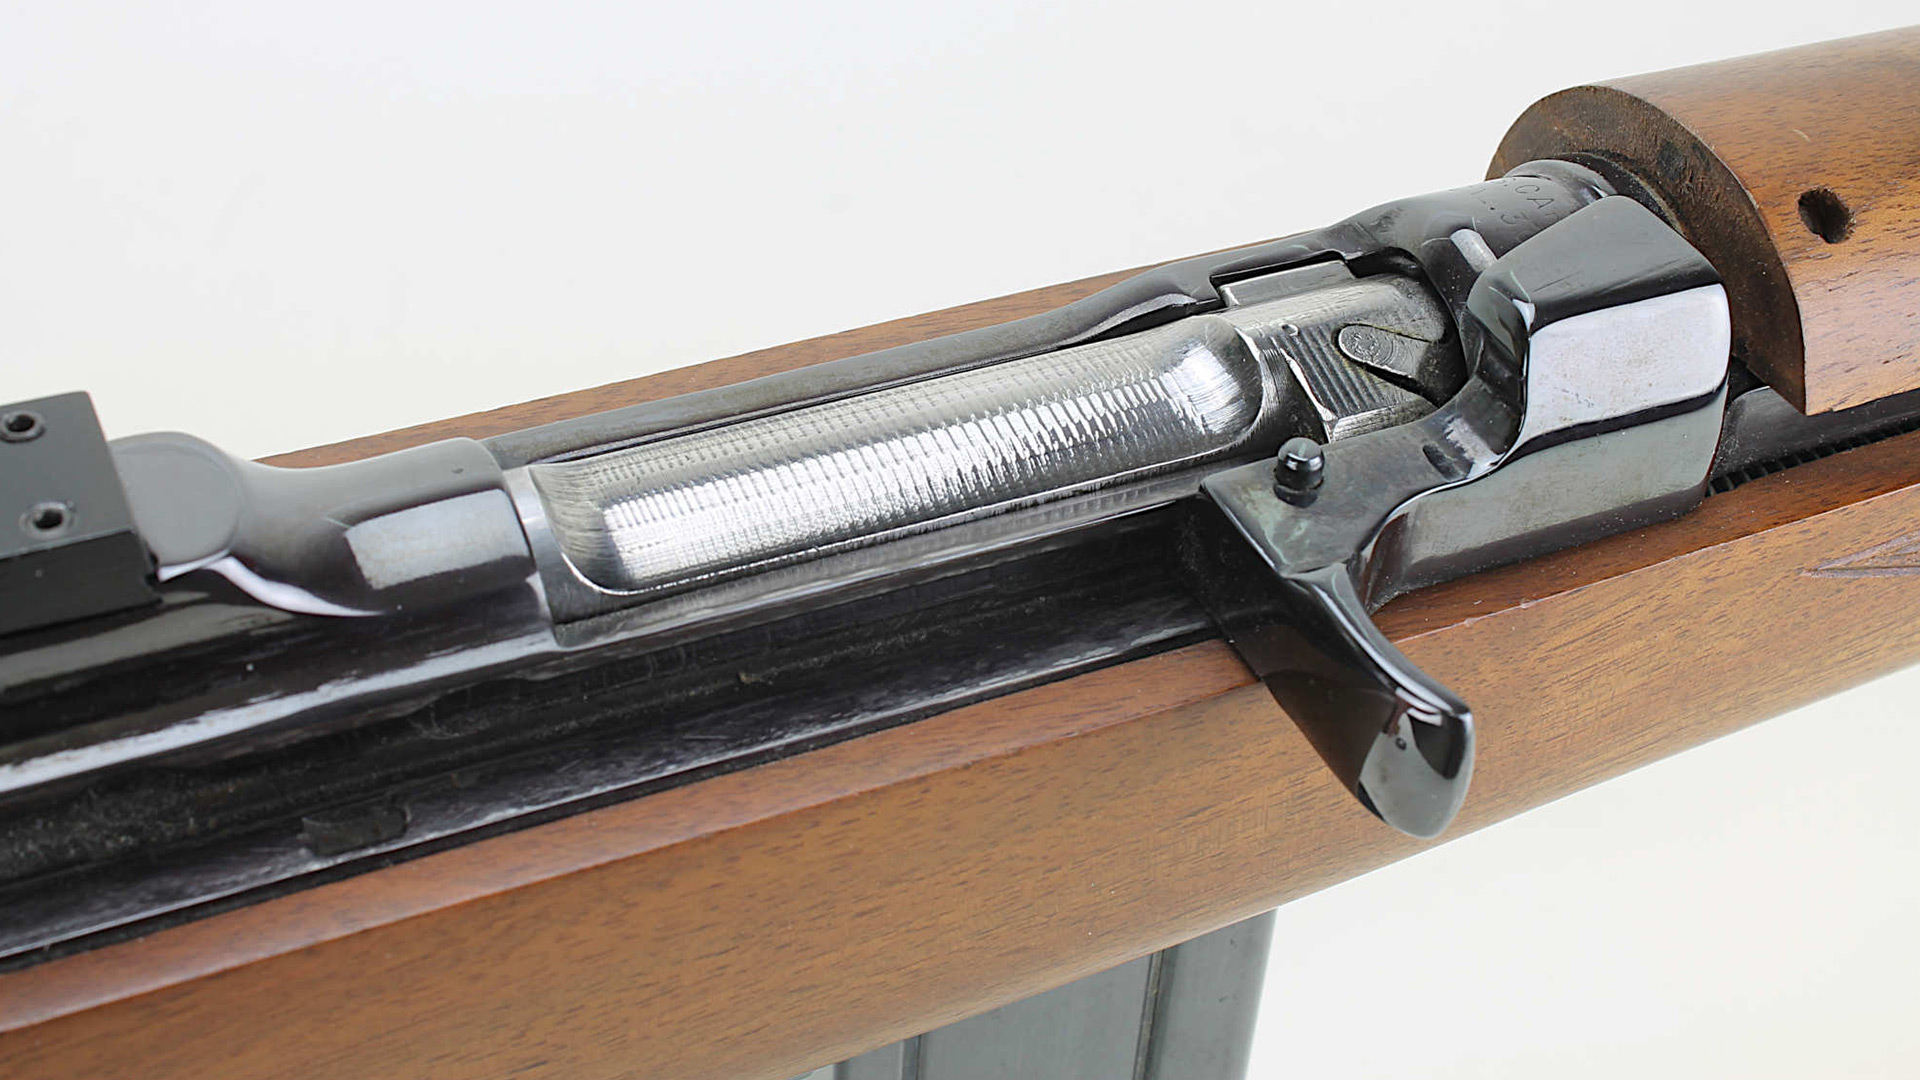 Pristine M1 Carbine conversion